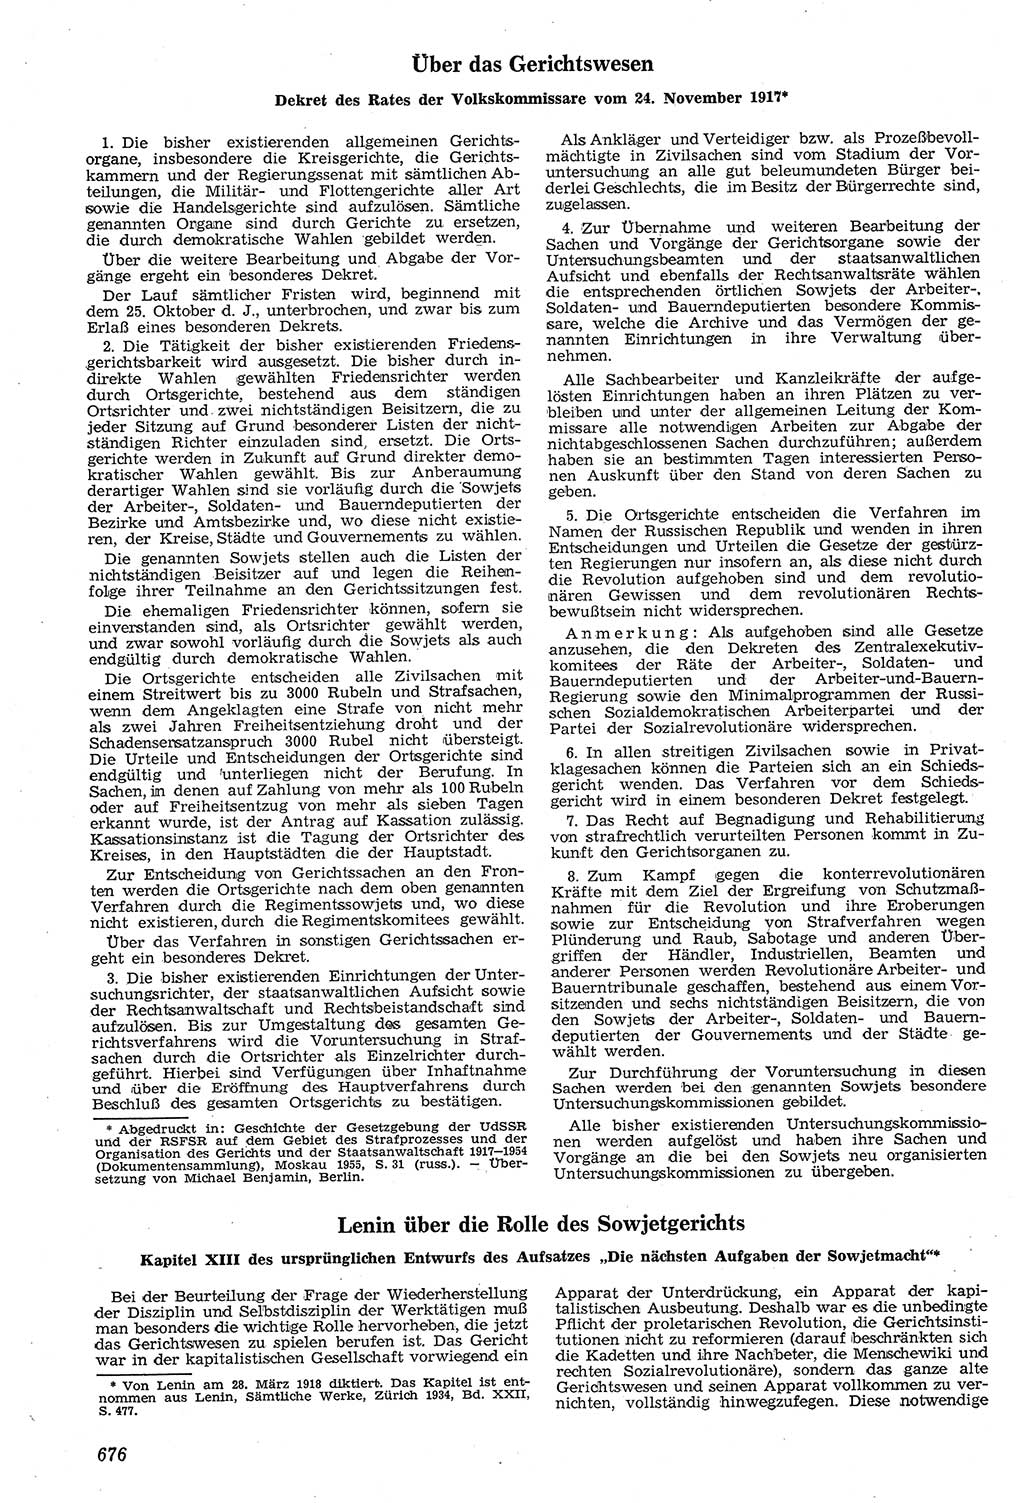 Neue Justiz (NJ), Zeitschrift für Recht und Rechtswissenschaft [Deutsche Demokratische Republik (DDR)], 11. Jahrgang 1957, Seite 676 (NJ DDR 1957, S. 676)